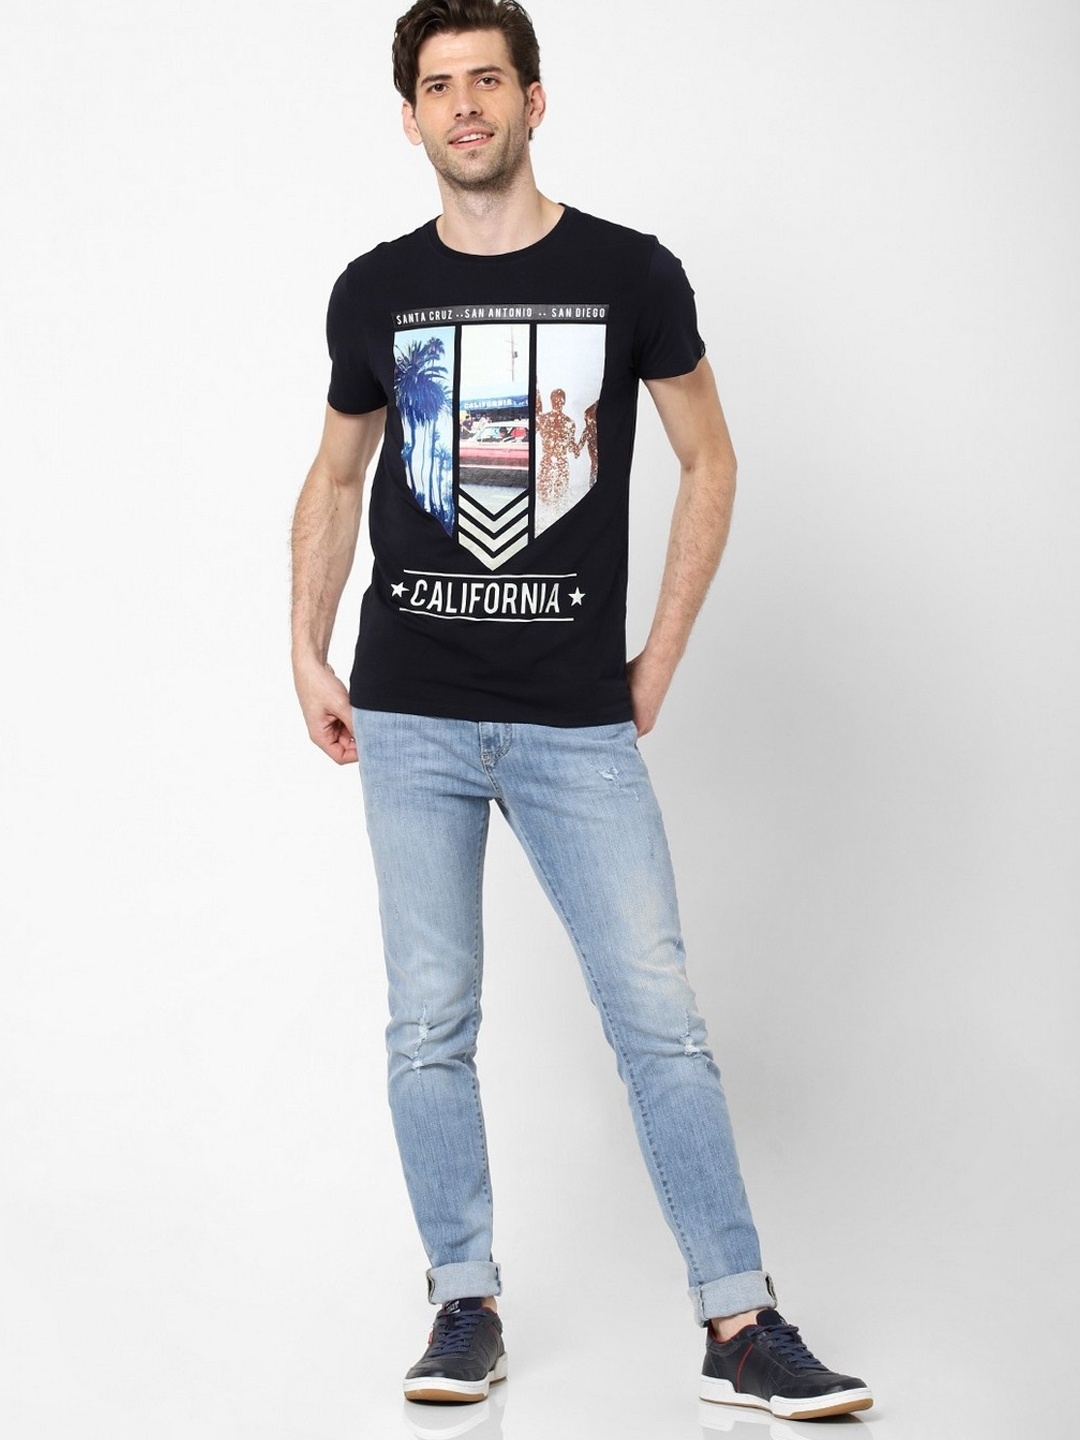 Scuba Slim Fit Graphic Print Crew-Neck T-shirt